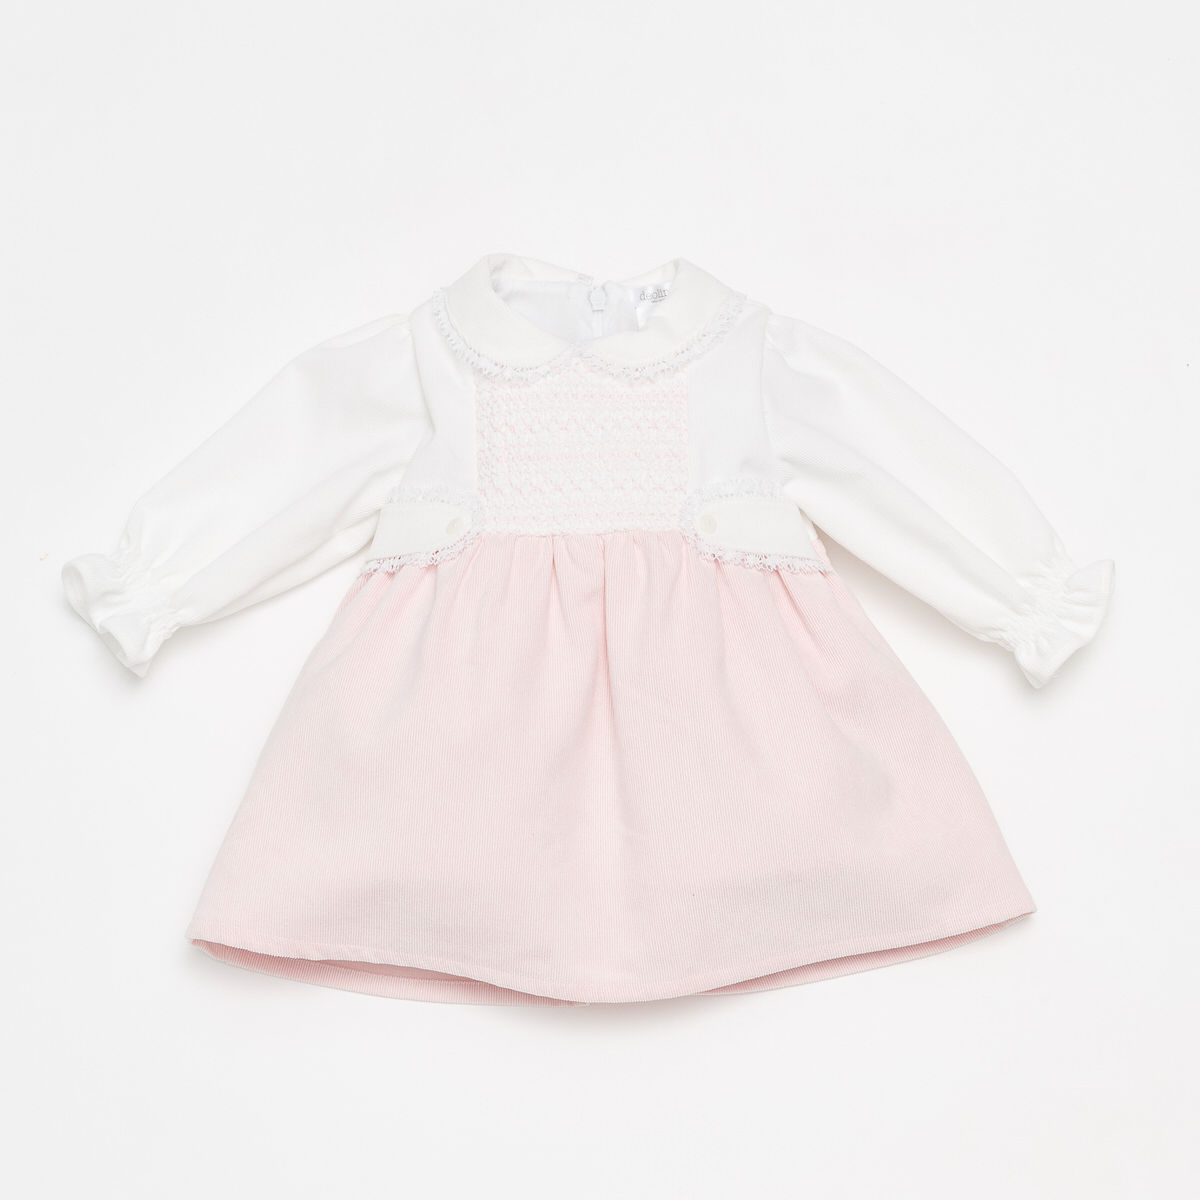 Deolinda Smocked Dress Baby Pink & White